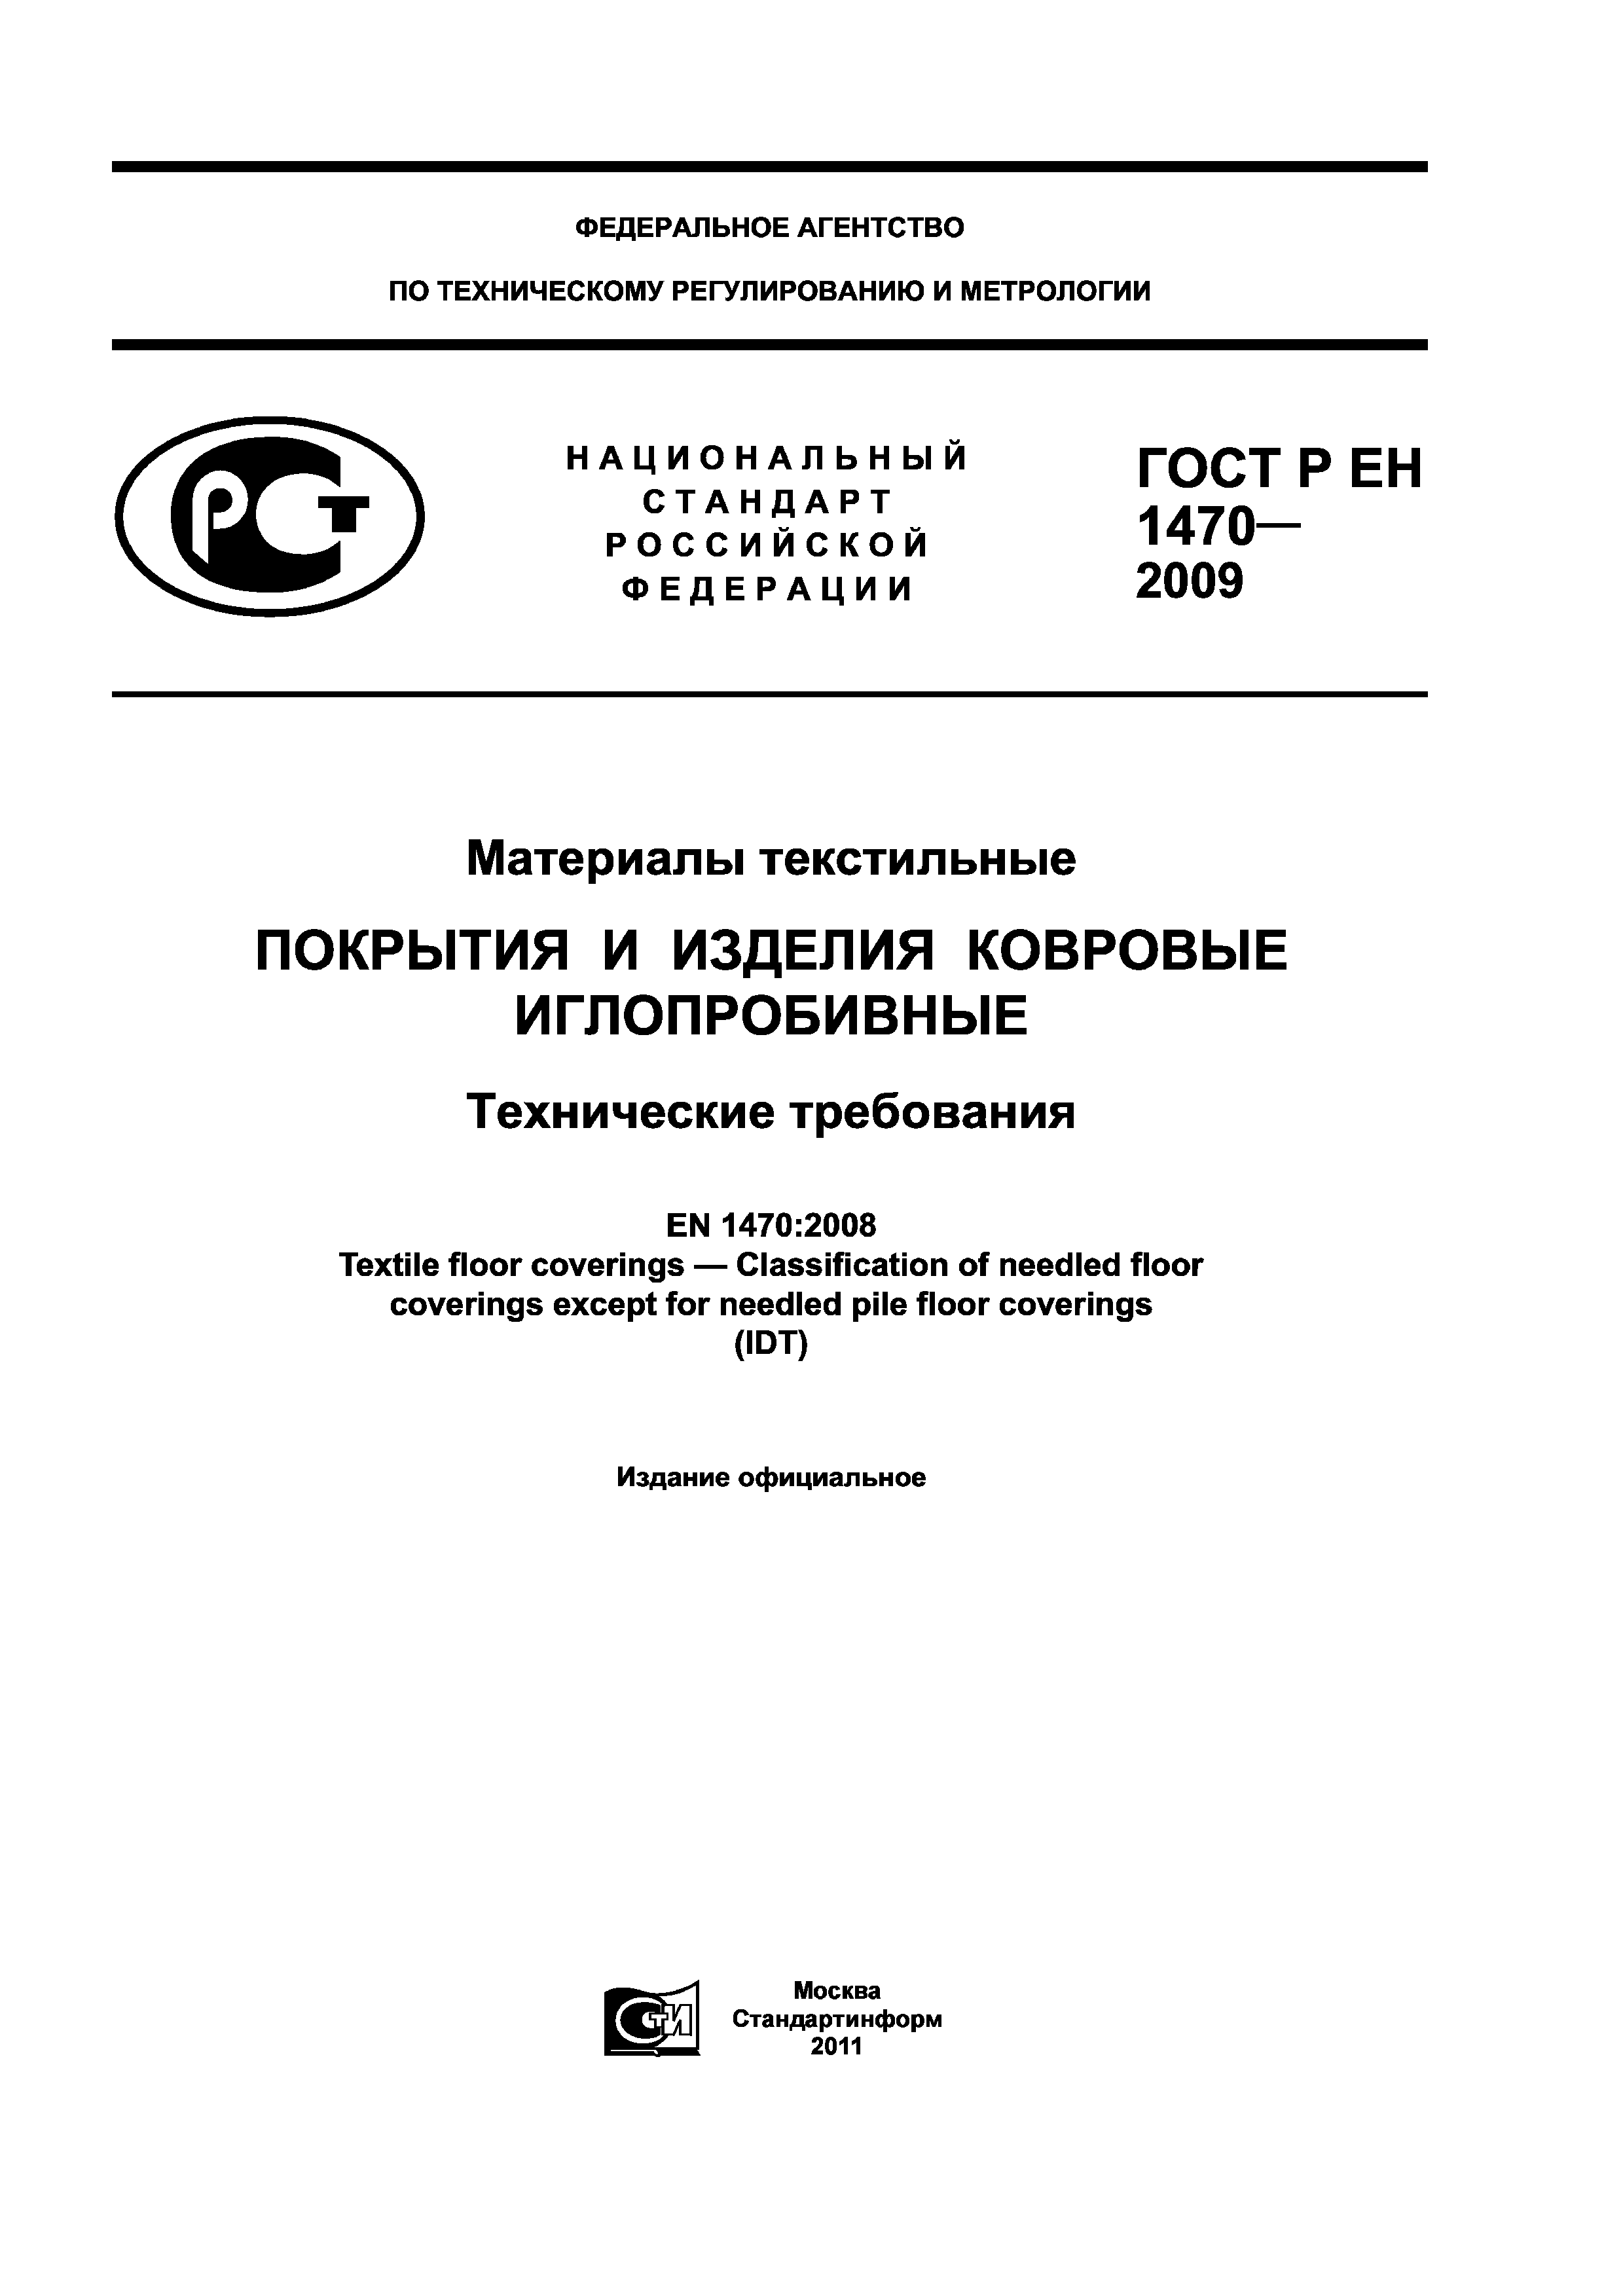 ГОСТ Р ЕН 1470-2009